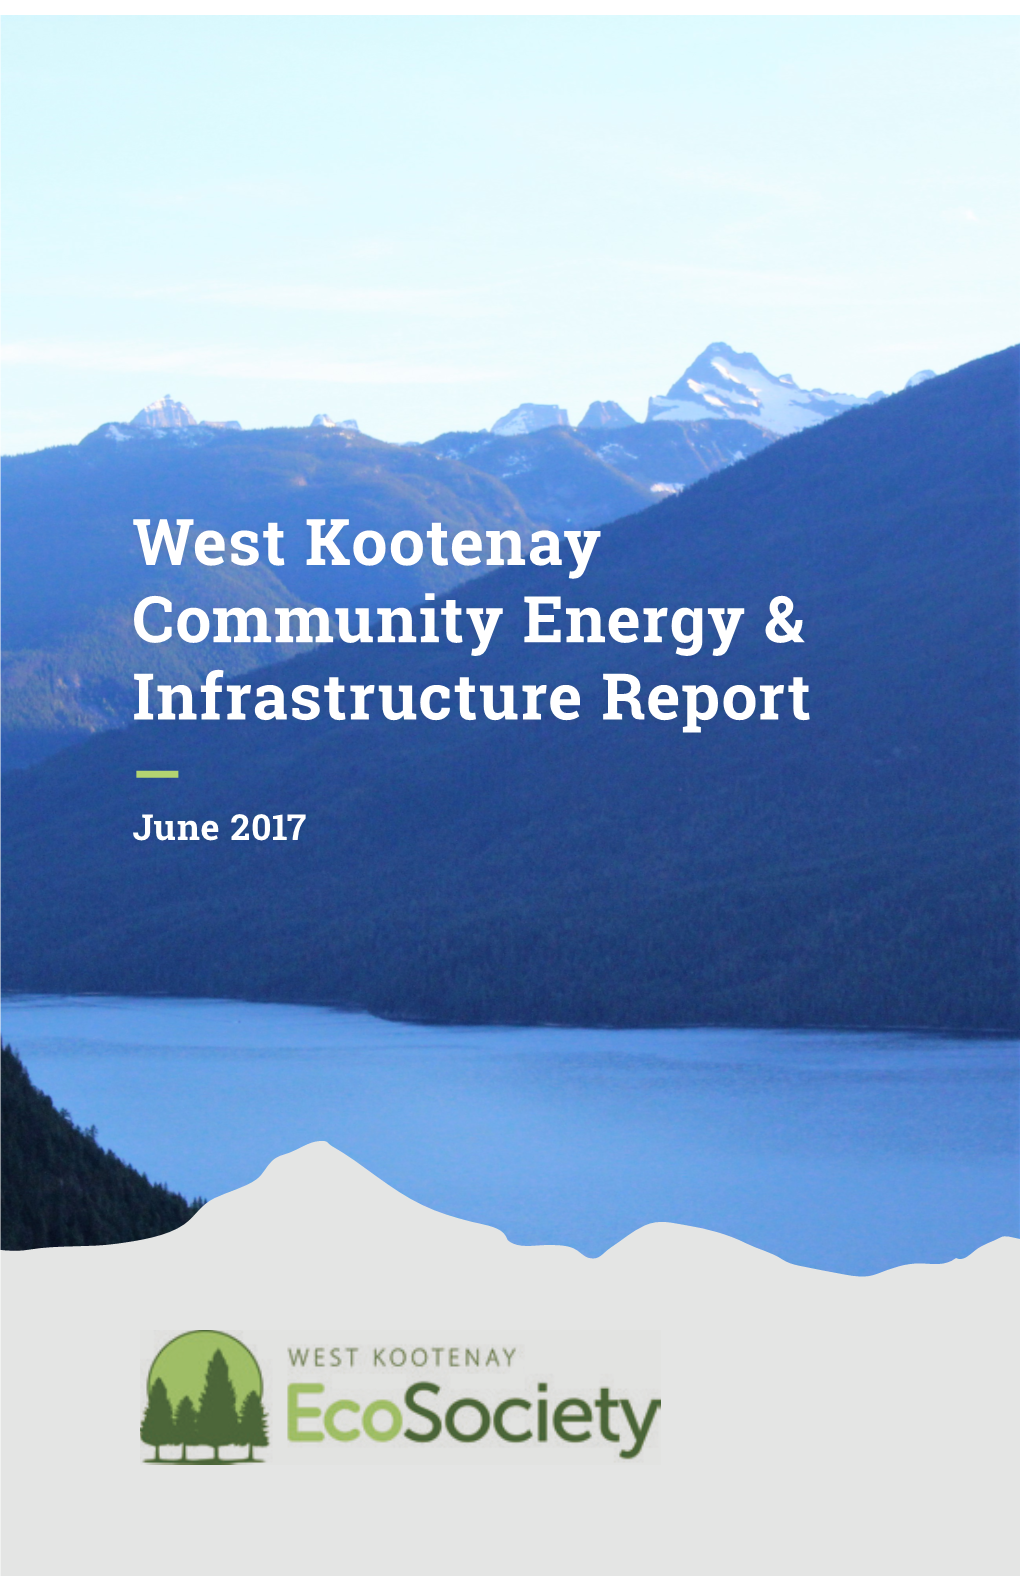 West Kootenay Community Energy & Infrastructure Report, June 2017